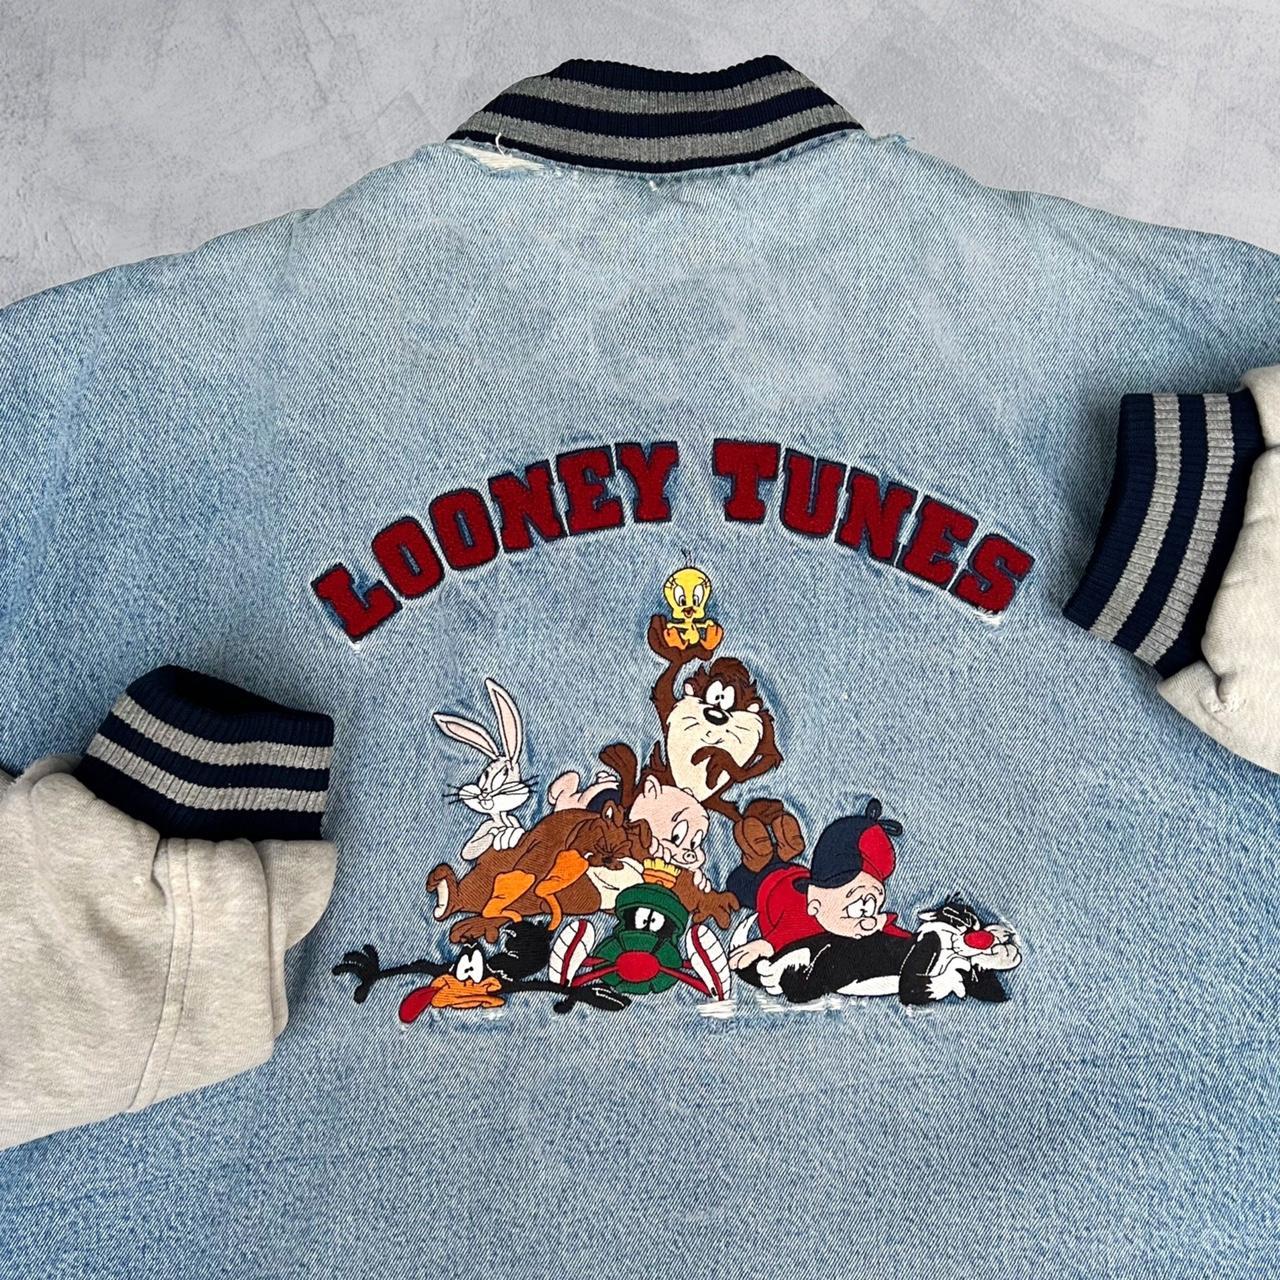 𝓛𝓸𝓾𝓲𝓼 𝓥𝓾𝓲𝓽𝓽𝓸𝓷 FW22 Bunny Varsity Jacket… 🐇🐇 This